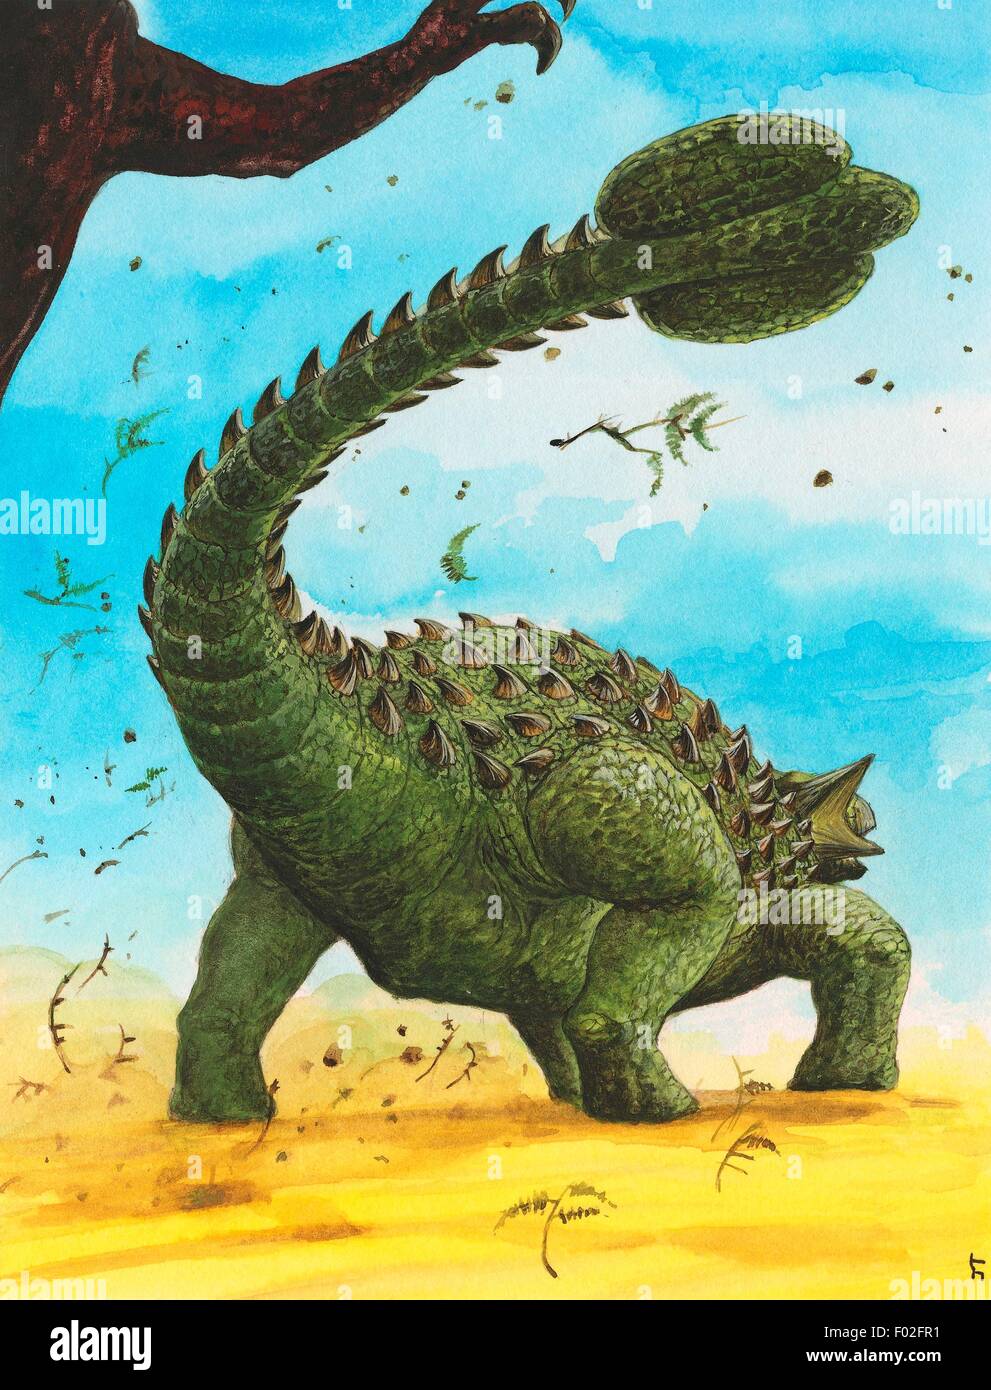 Shamosaurus scutatus, Ankylosauridae, Early Cretaceous. Illustration. Stock Photo